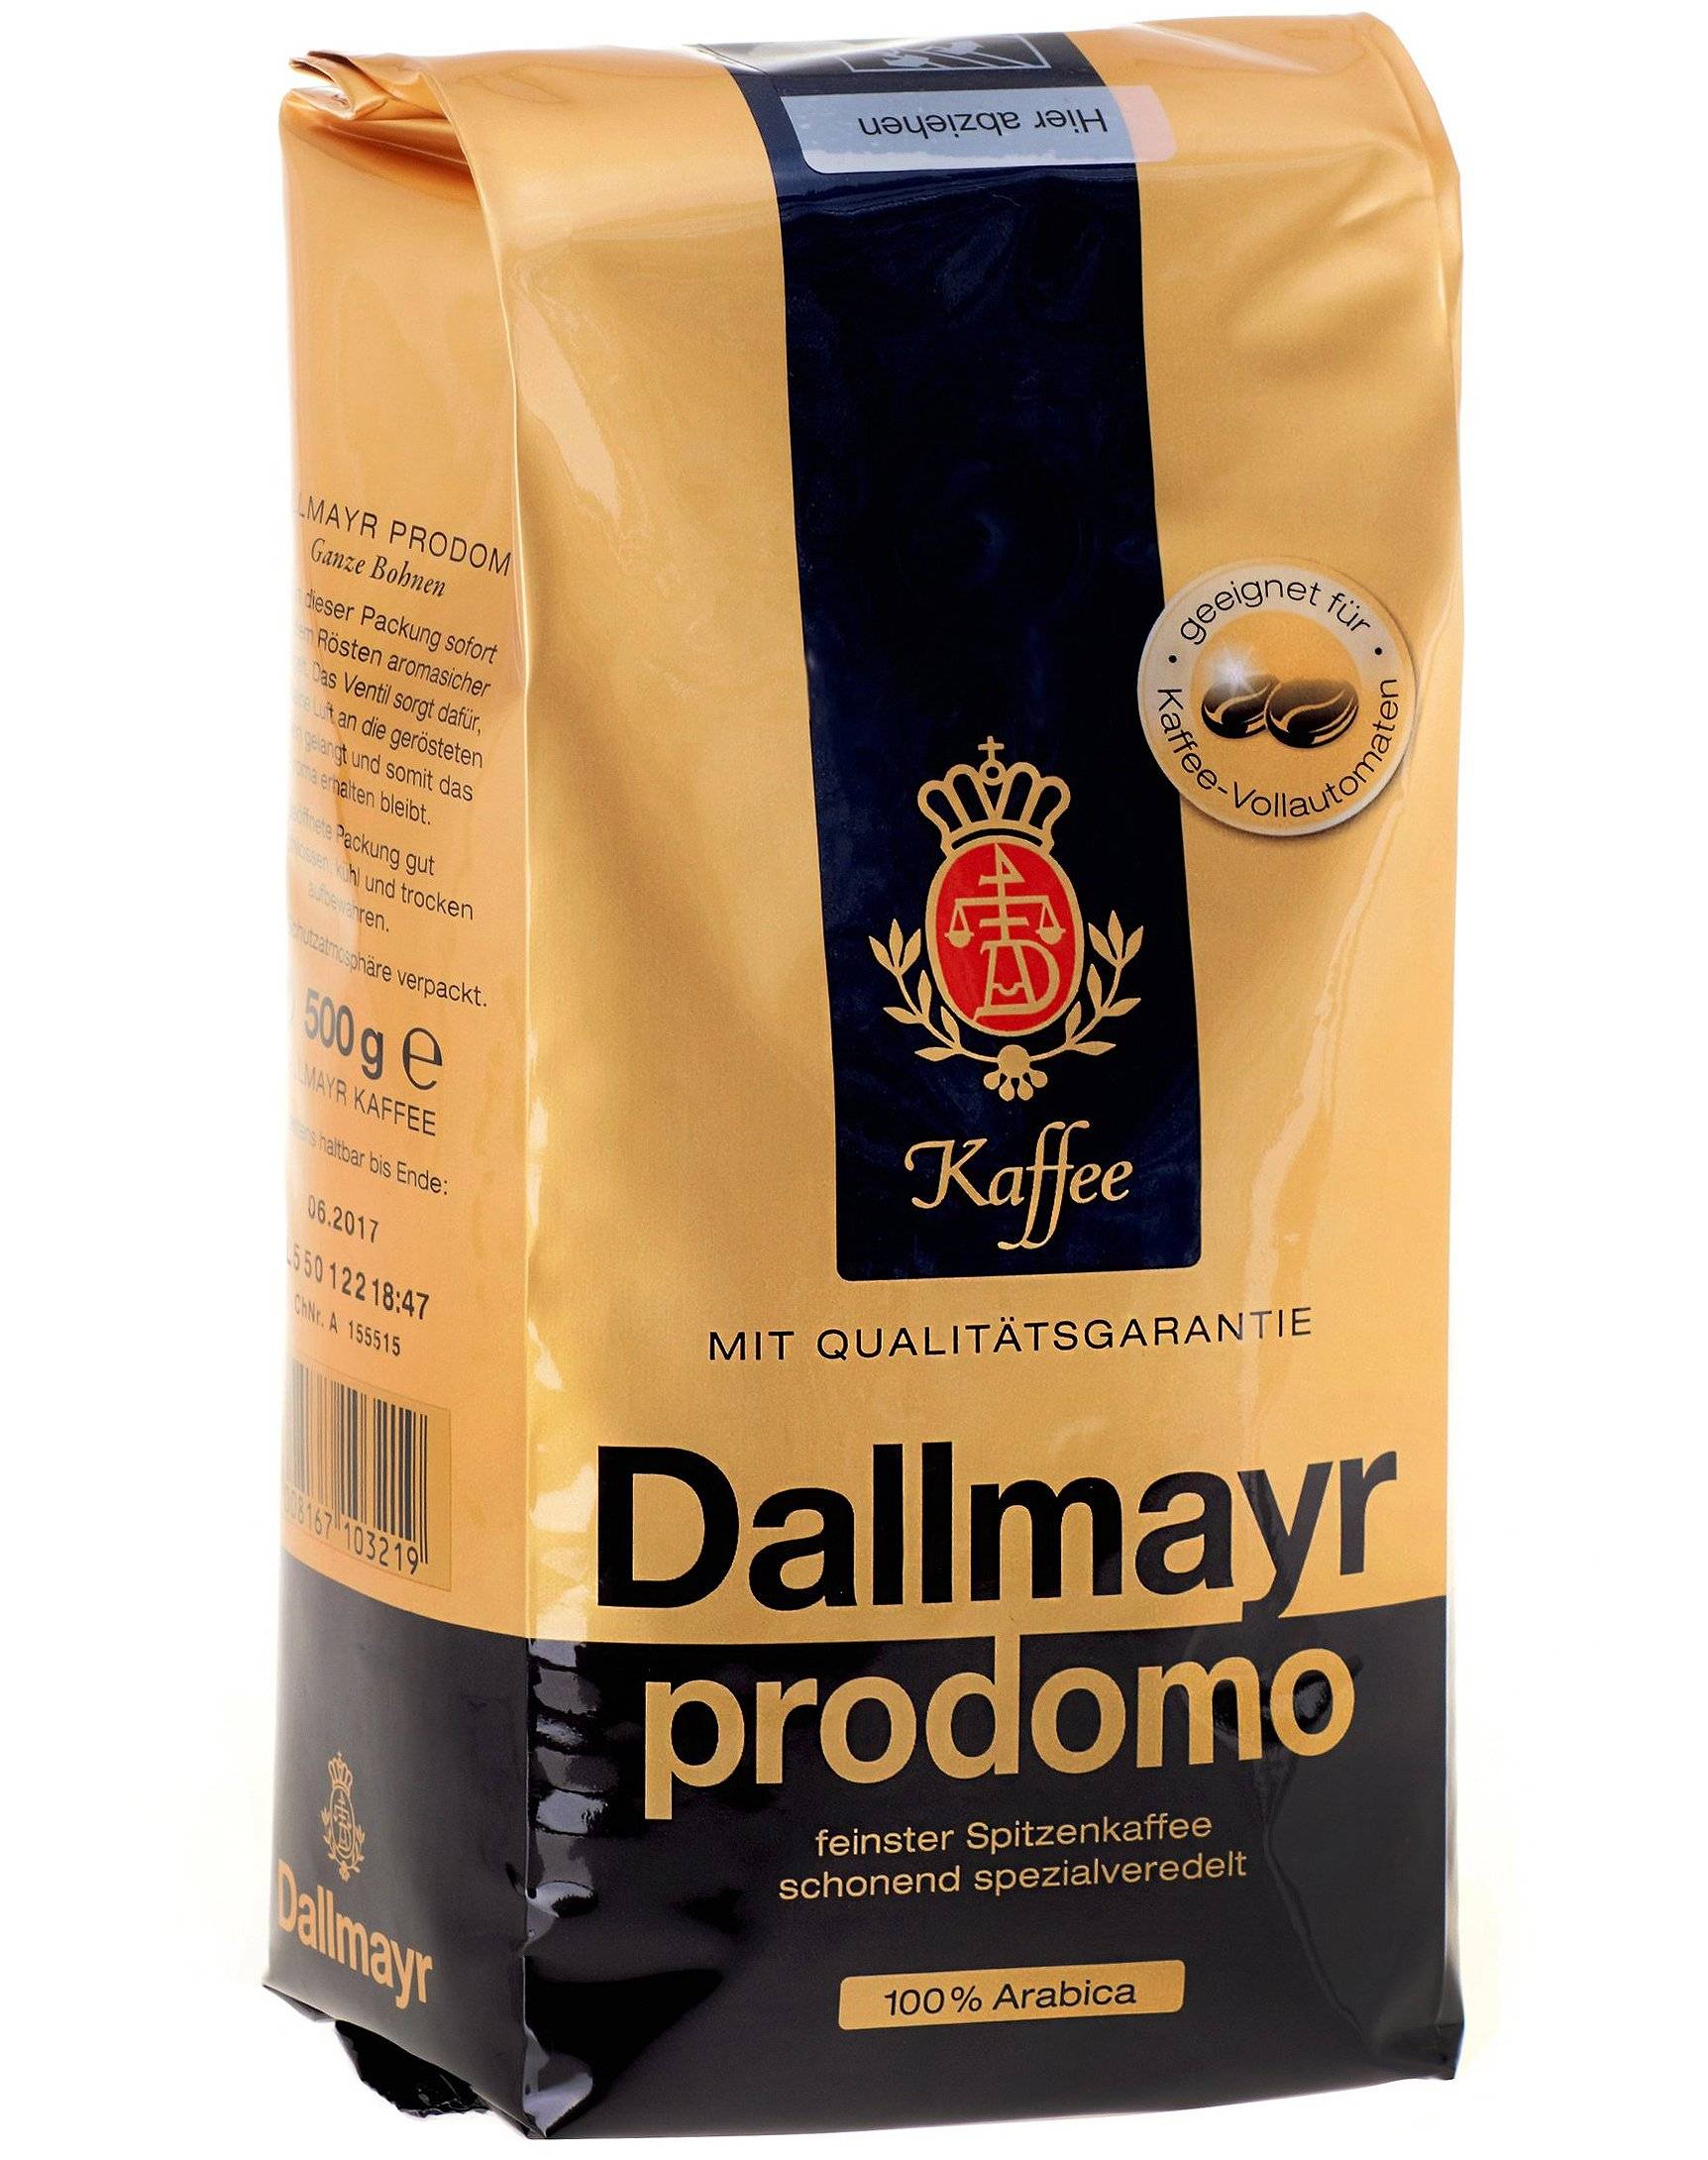 Кофе dallmayr: бренд, ассортимент, цены, отзывы